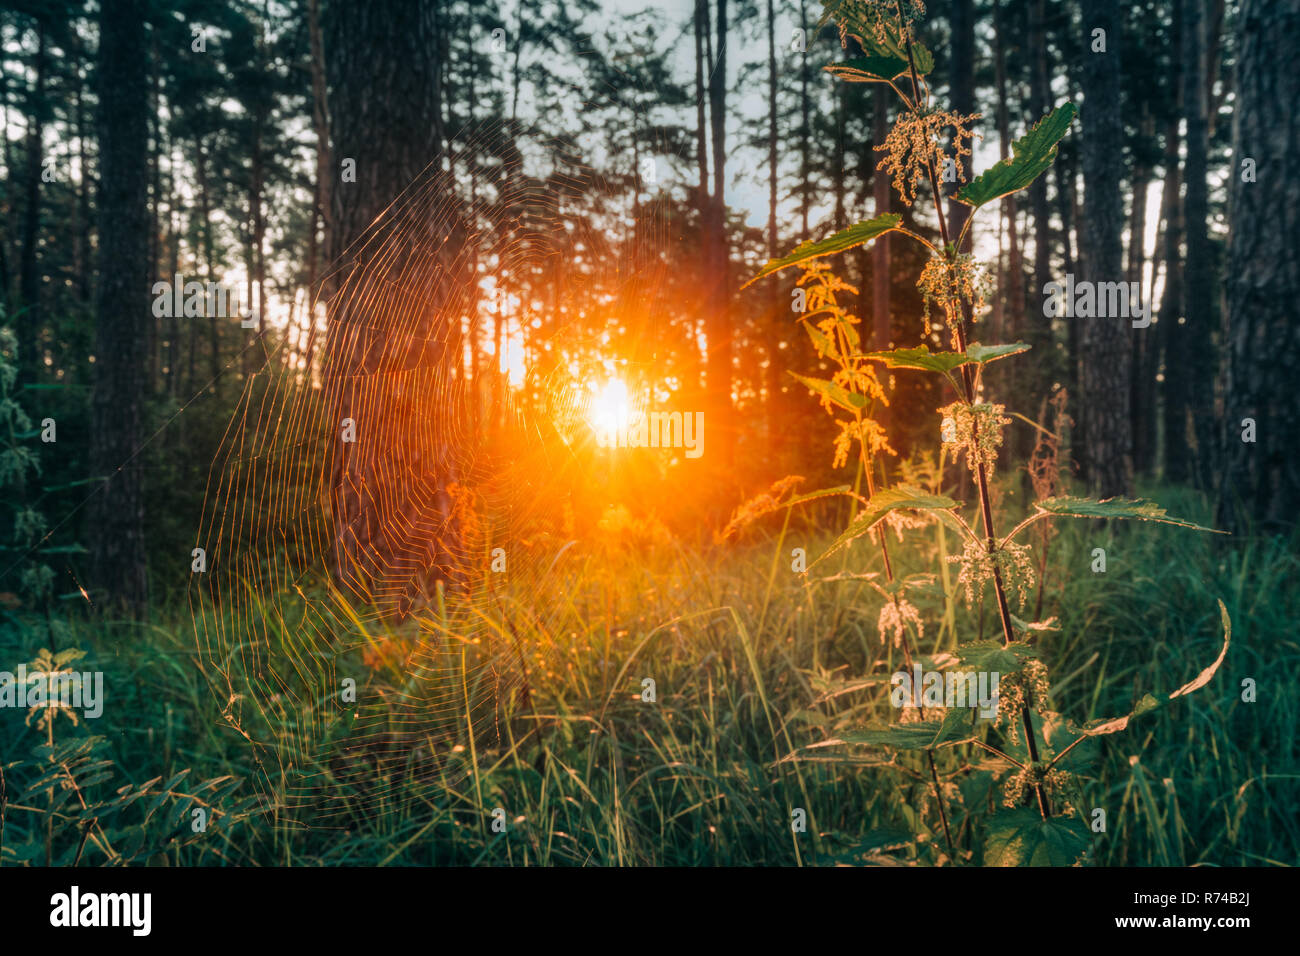 Hermoso Sol Sol a través de la tela de araña o araña sobre la hierba verde. La luz del sol los rayos solares durante la puesta de sol del amanecer en bosques soleados de verano. Foto de stock